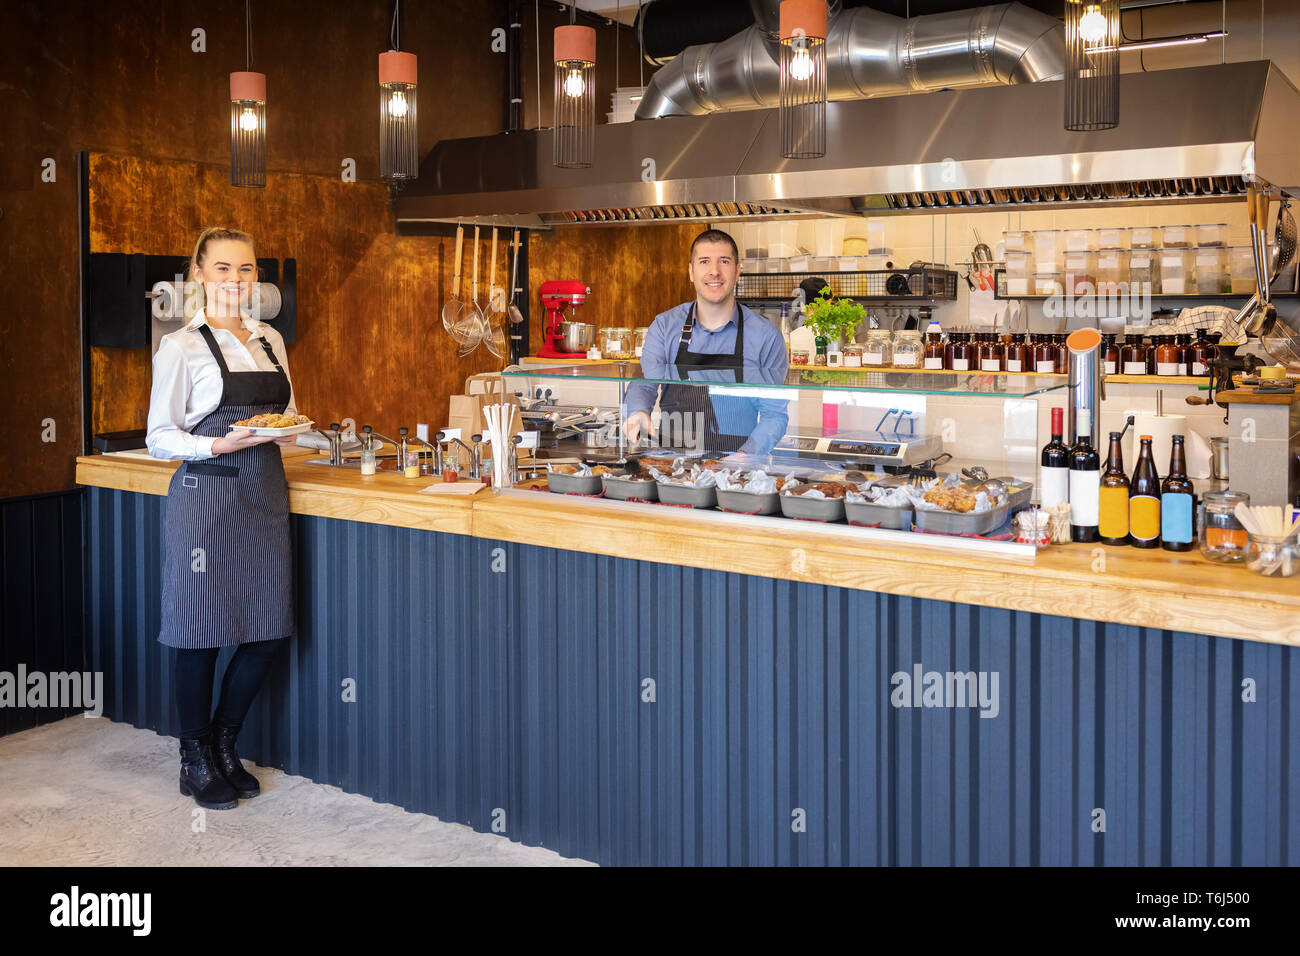 Le service au comptoir au bistro moderne avec des serveurs souriants servant de la nourriture Banque D'Images